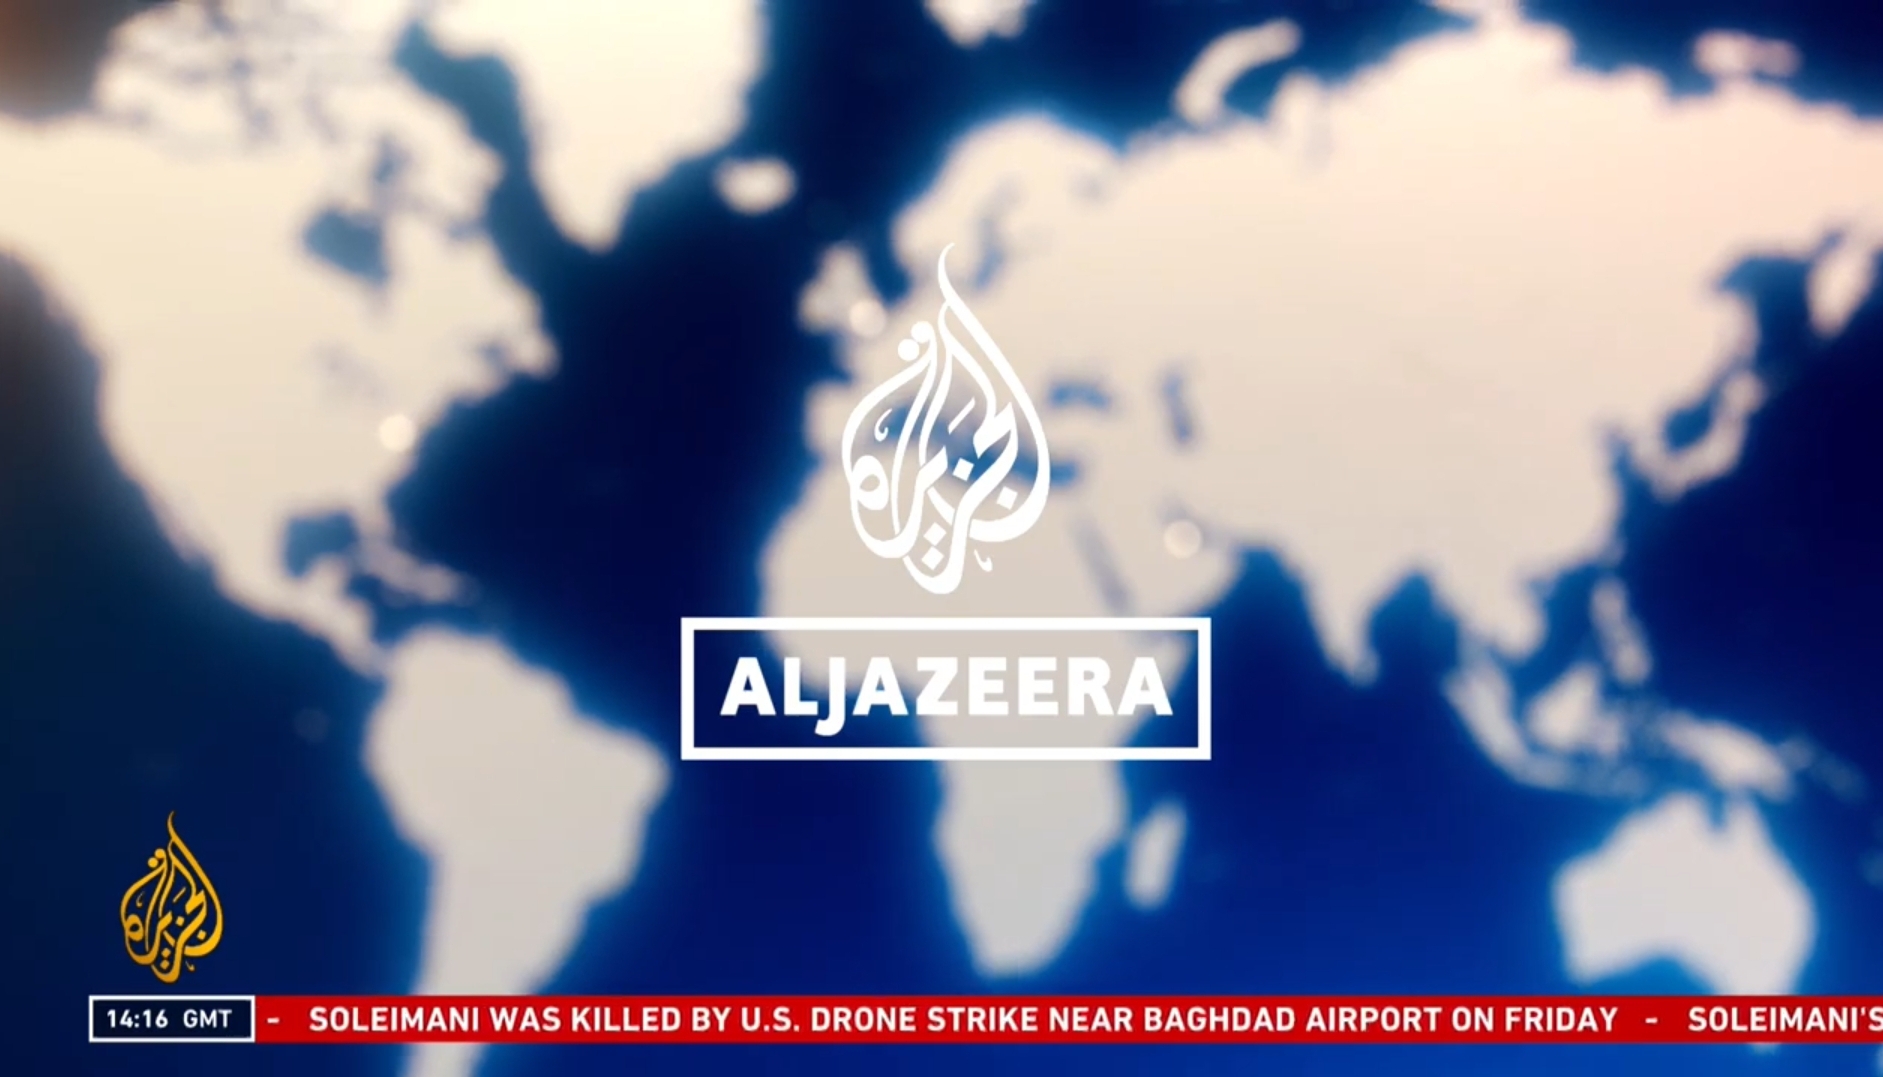  قناة Al Jazeera English تنطلق بحلة جديدة P_1466aivpx3